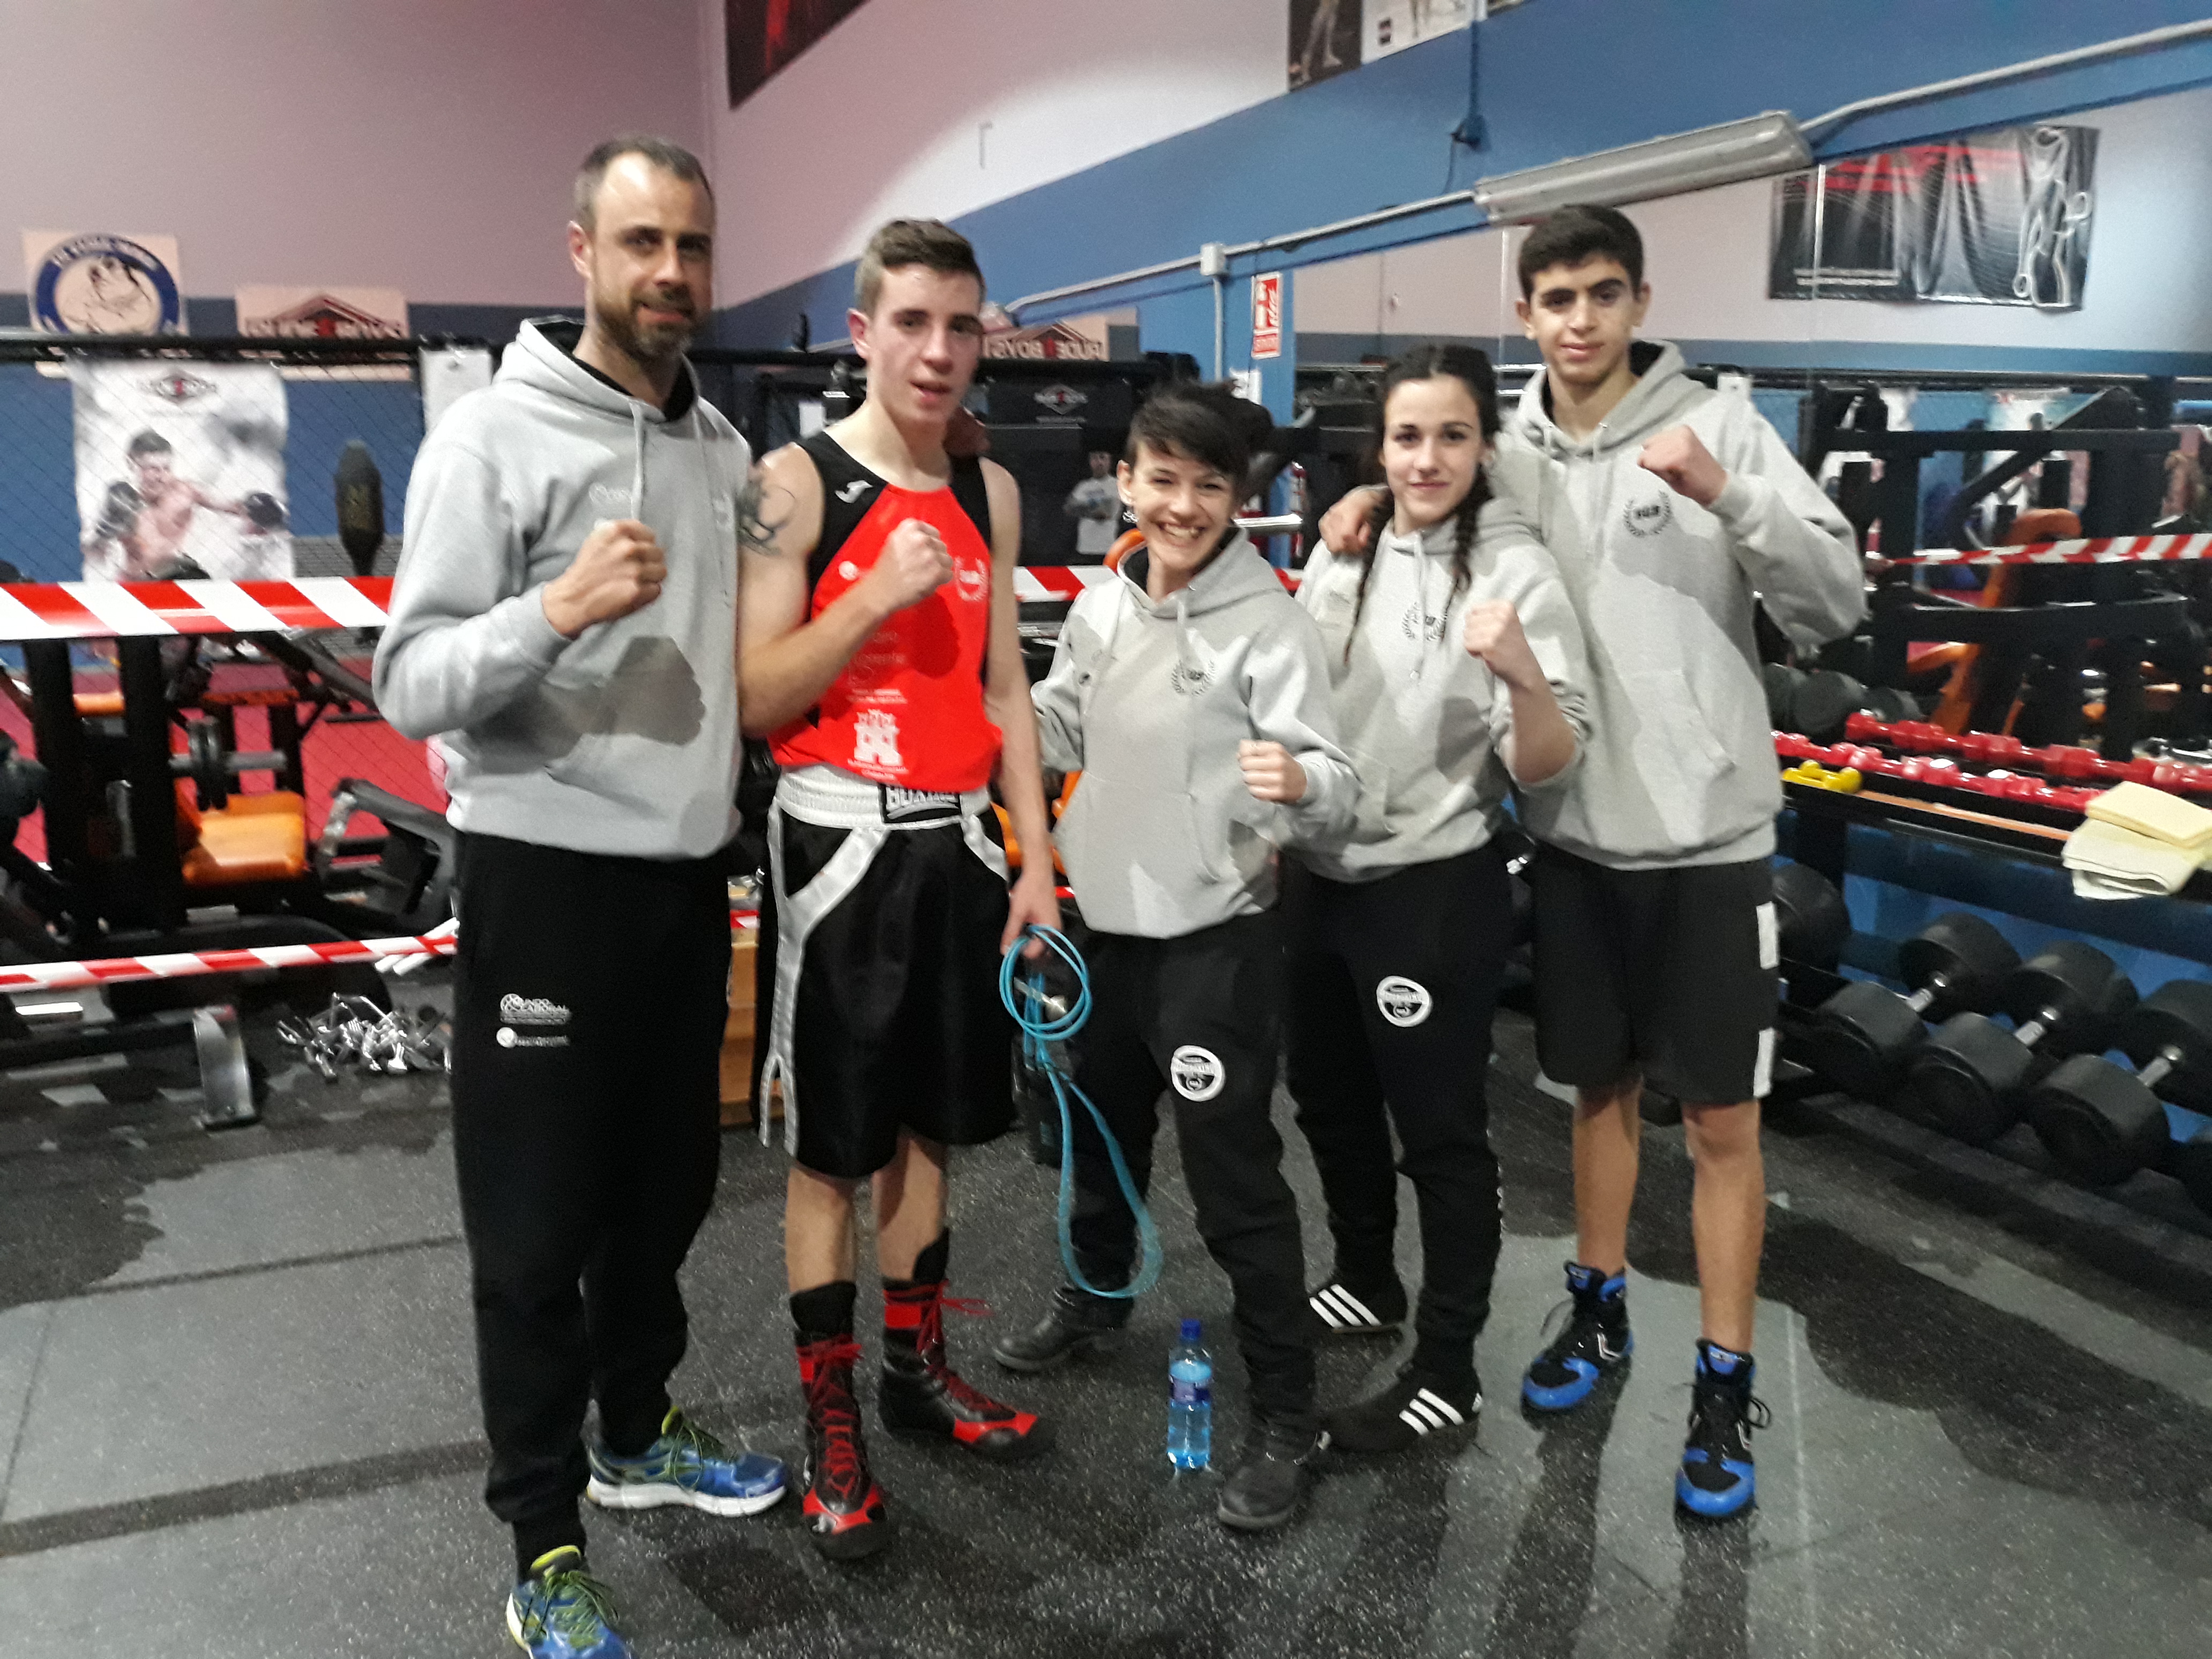 El Club Segoboxing obtiene cuatro metales en las finales de los Campeonatos Autonómicos de Boxeo Olímpico